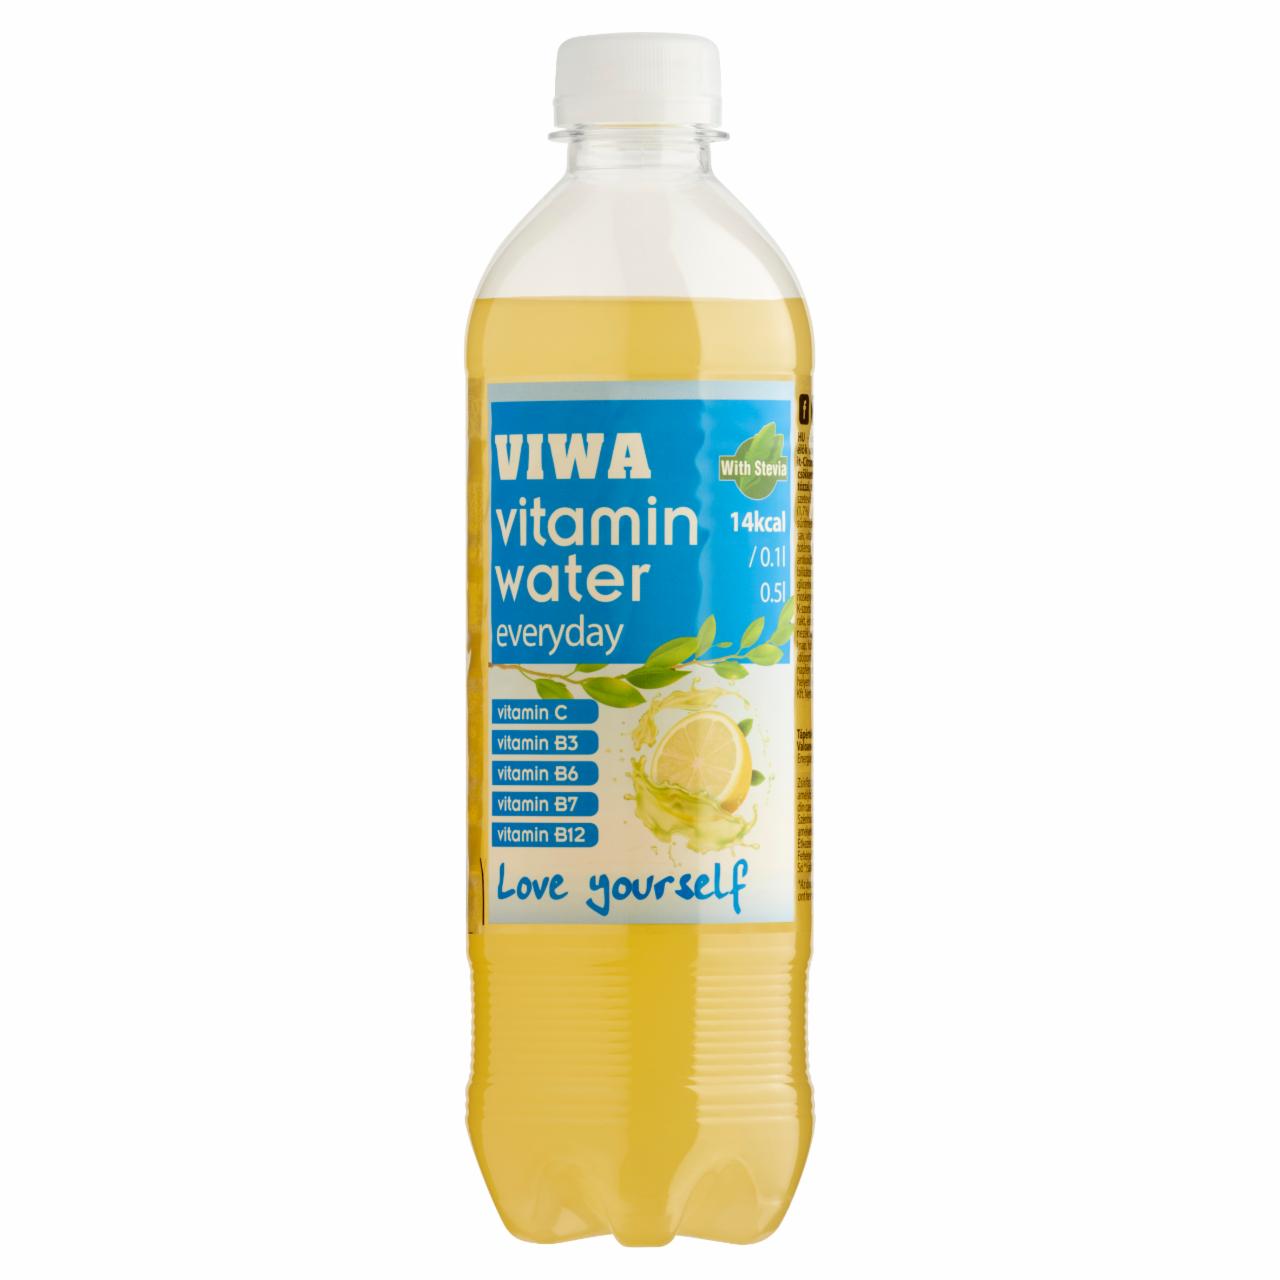 Képek - Viwa Vitaminwater Everyday grapefruit ízű szénsavmentes üdítőital 0,5 l